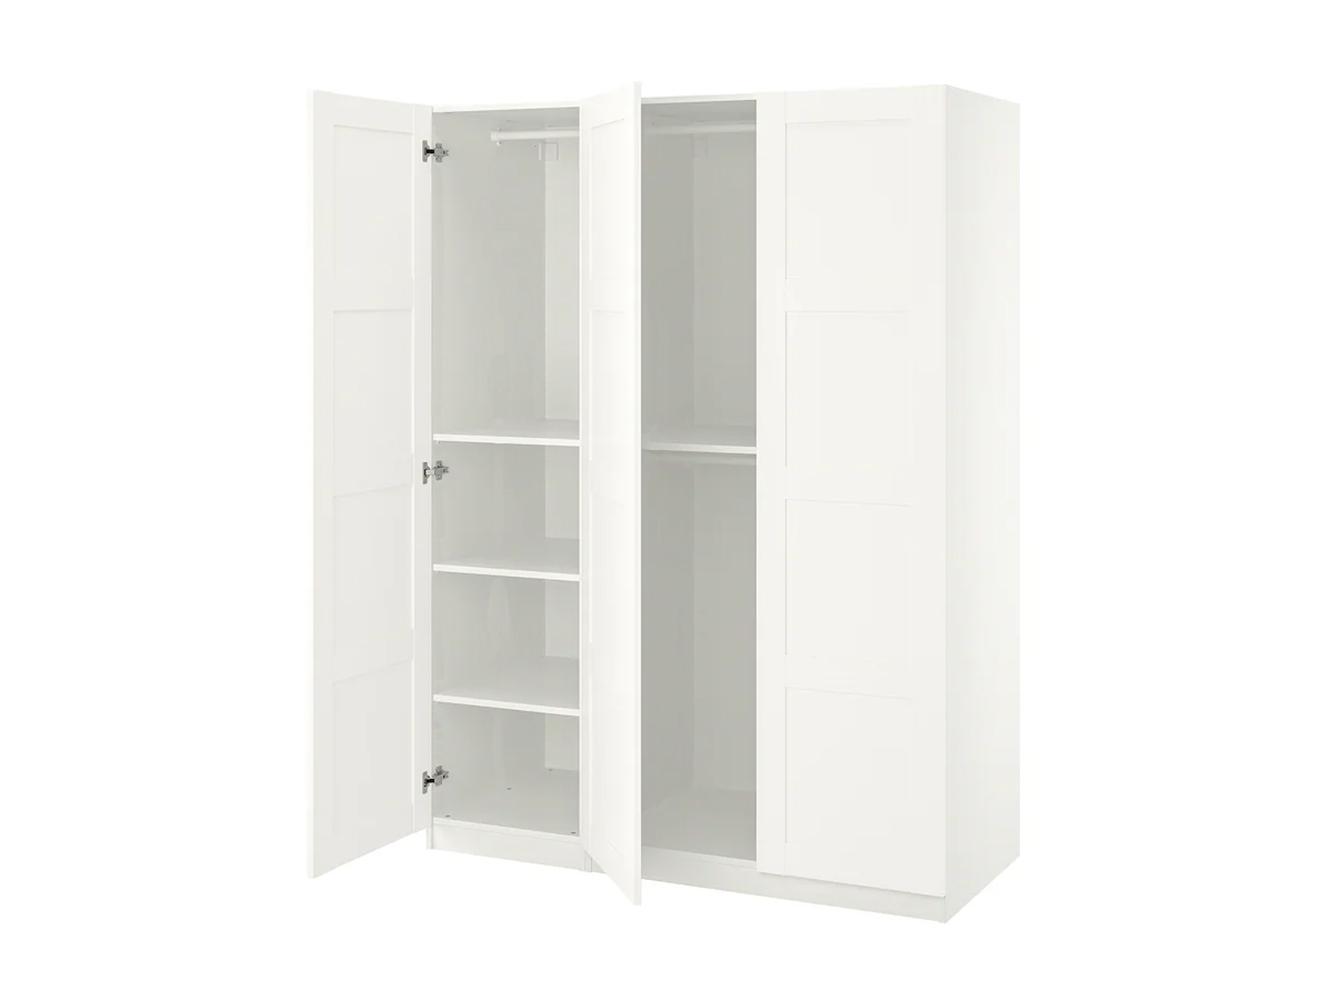 Распашной шкаф Пакс Бергсбо 13 white ИКЕА (IKEA) изображение товара